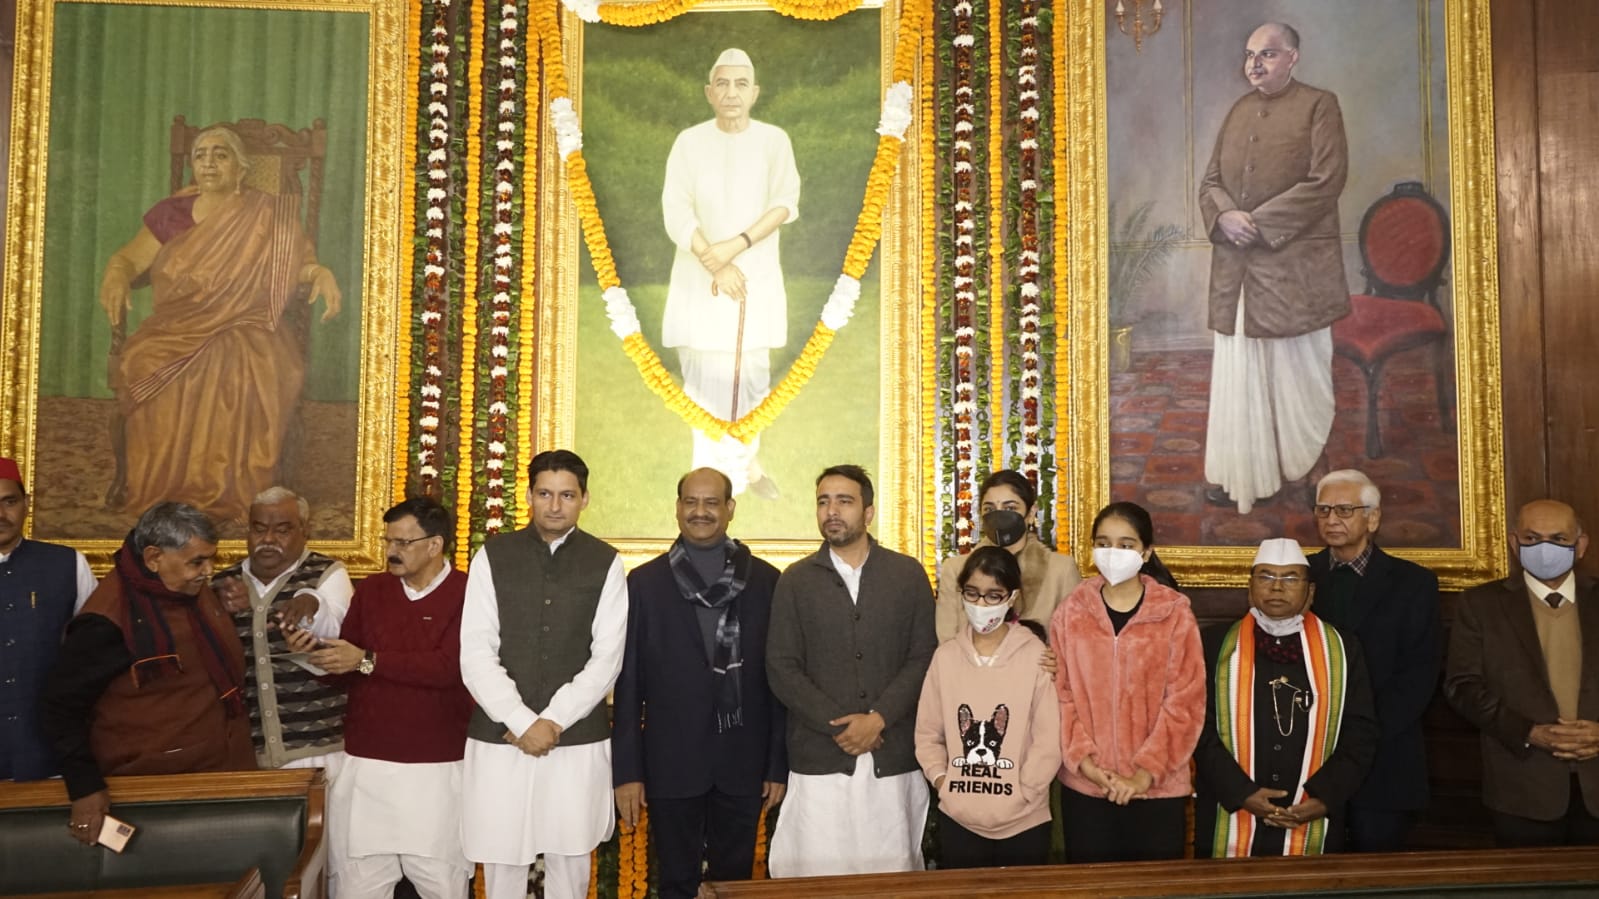 लोक सभा अध्यक्ष ओम बिरला के नेतृत्व में संसद सदस्यों ने किया पूर्व प्रधान मंत्री चौधरी चरण सिंह की जयंती पर श्रद्धासुमन अर्पित